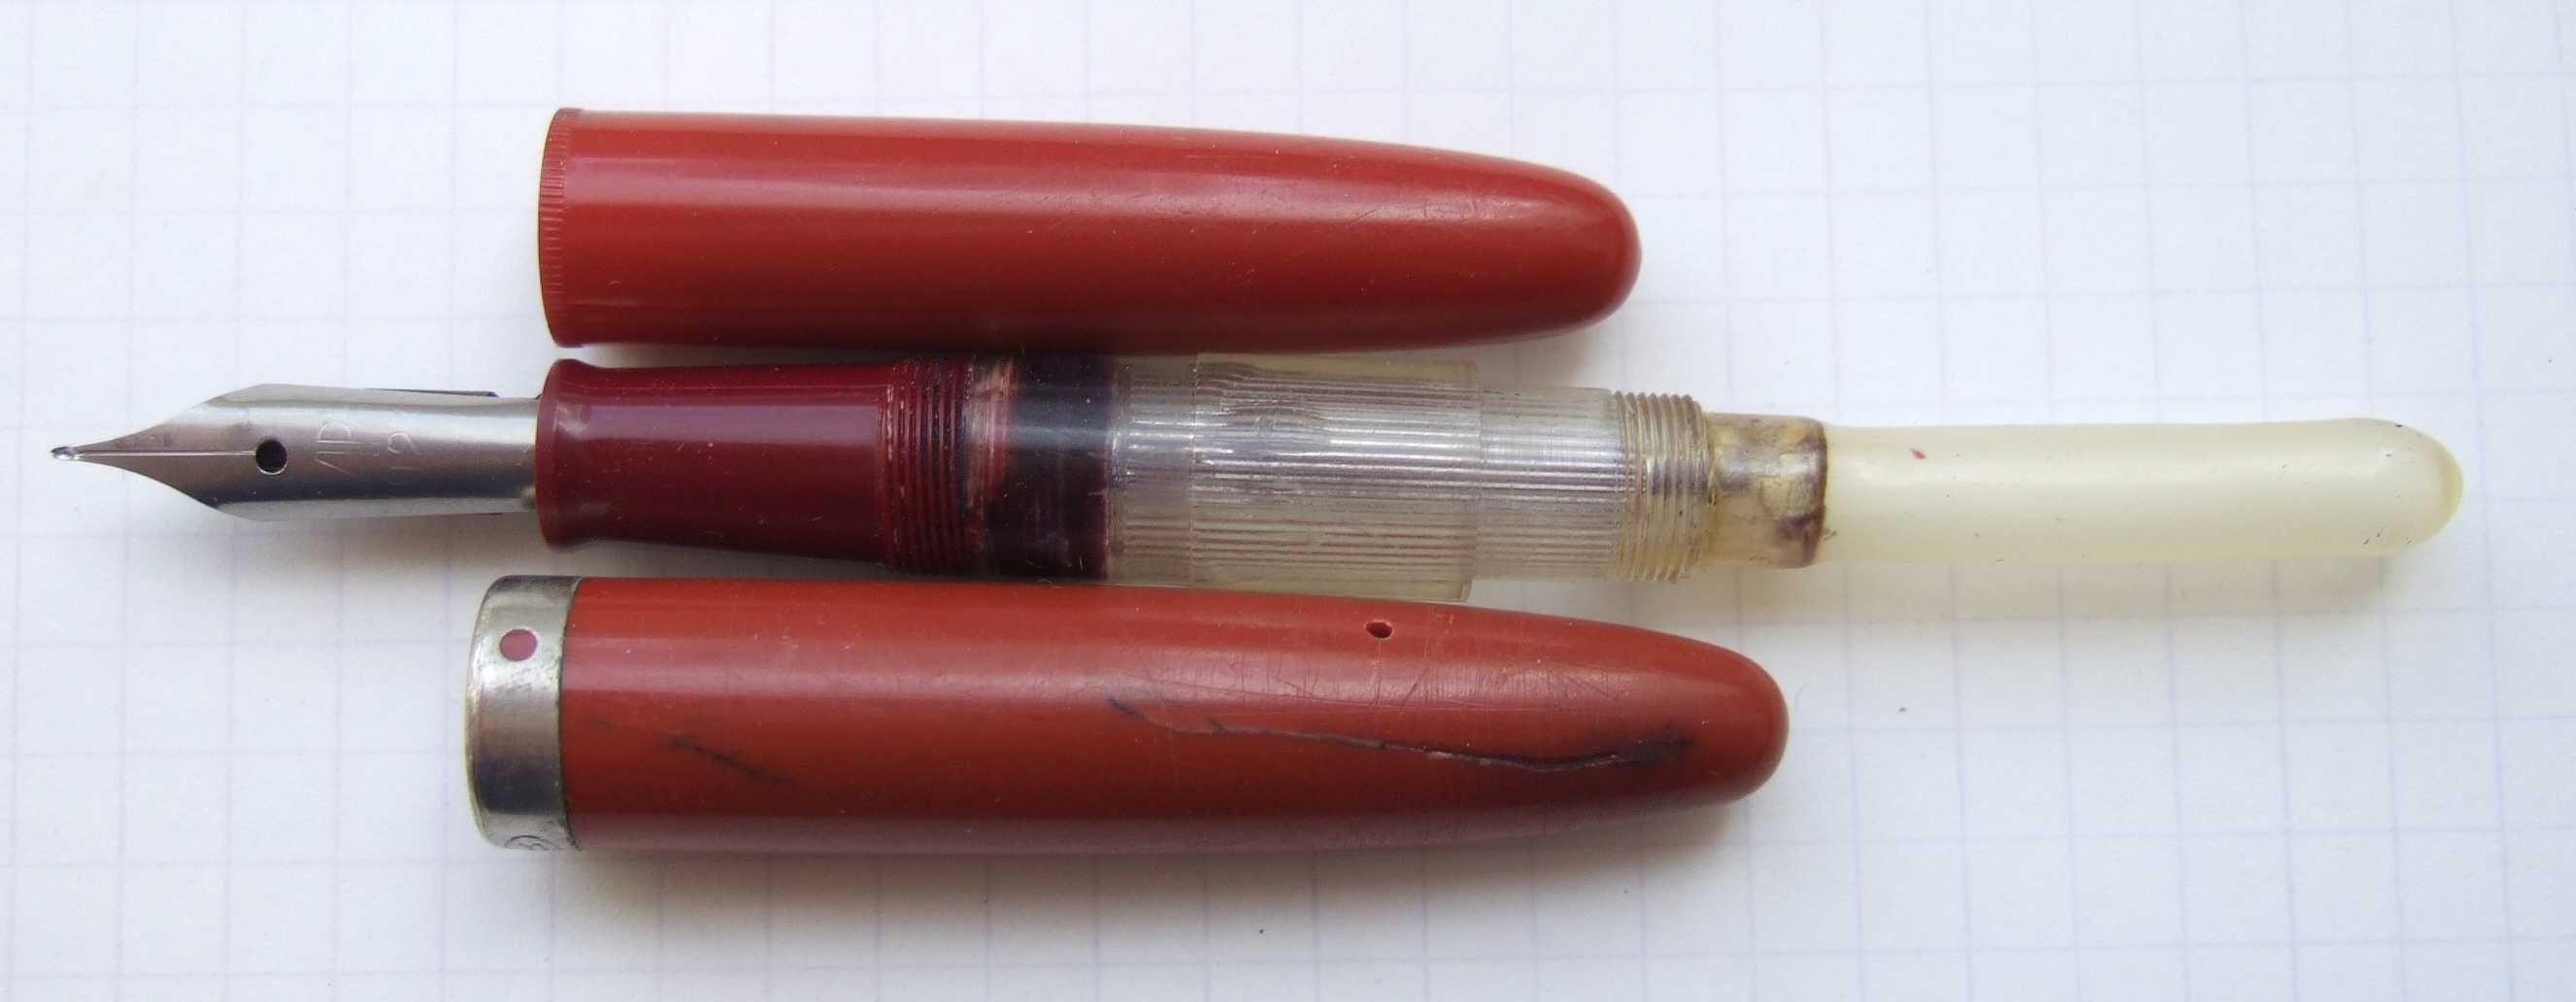 Ярославська перова ручка з піпєткою. Пише м'яко та тонко, перо гнучке